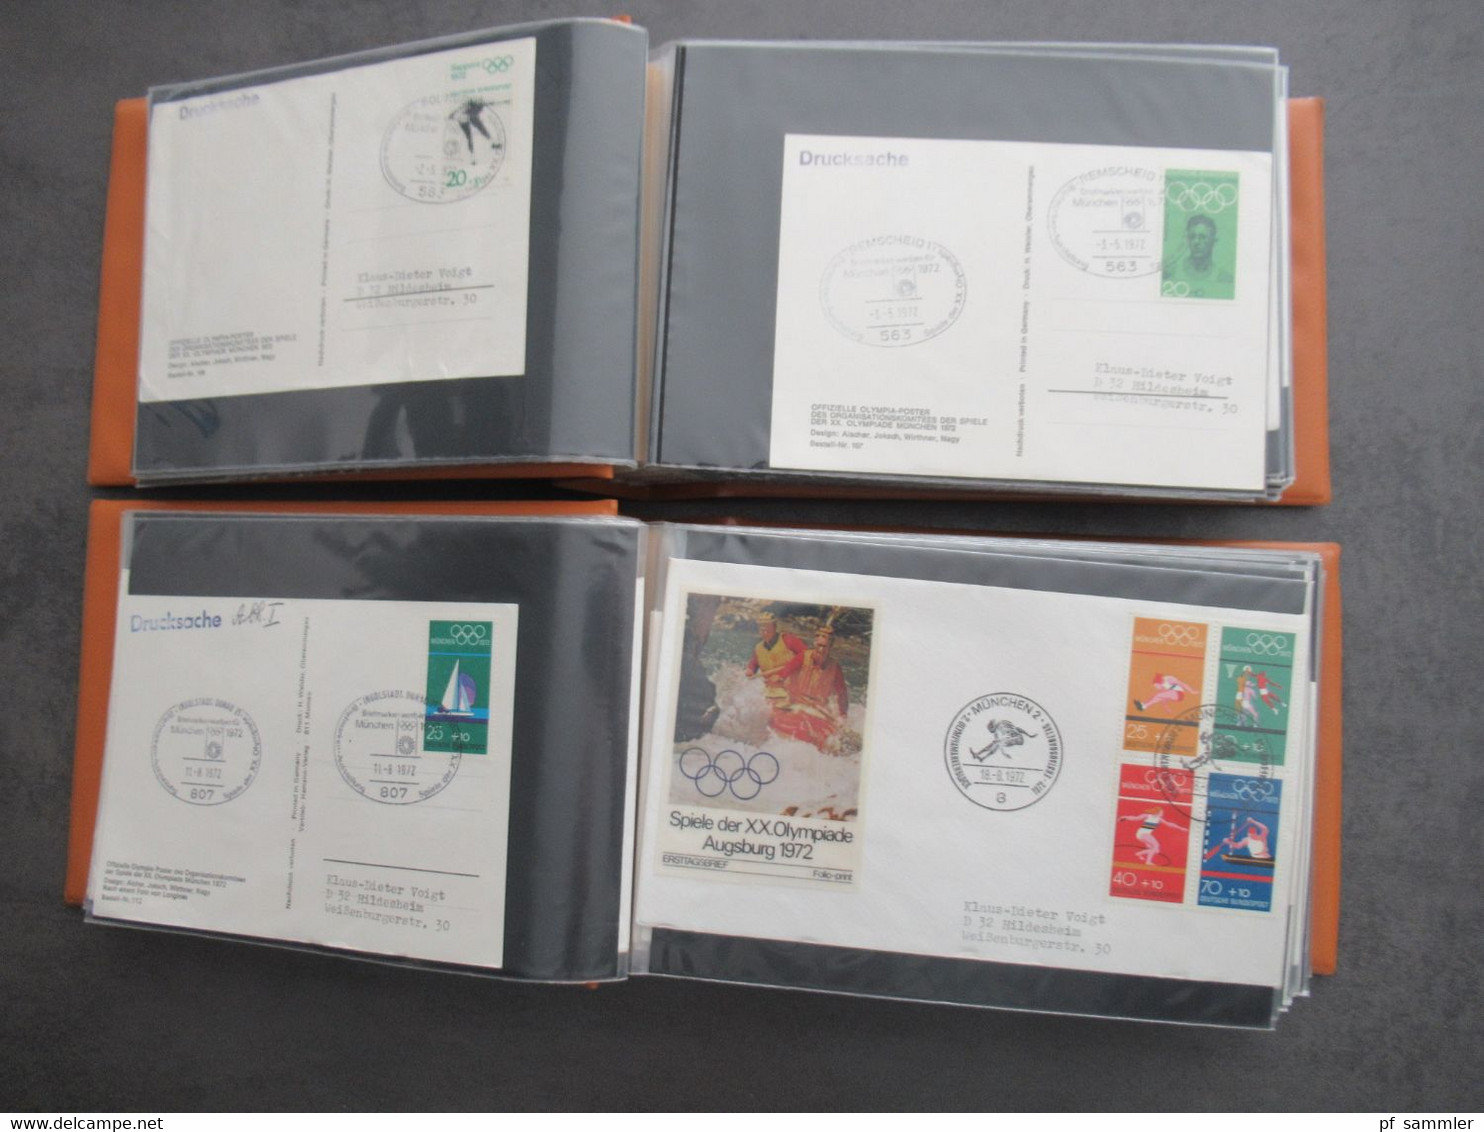 Olympiade 1972 (wenige andere!) über 200 Belege / PK / Sonderkarten in 2 sauberen belege Alben. Auch andere Länder!